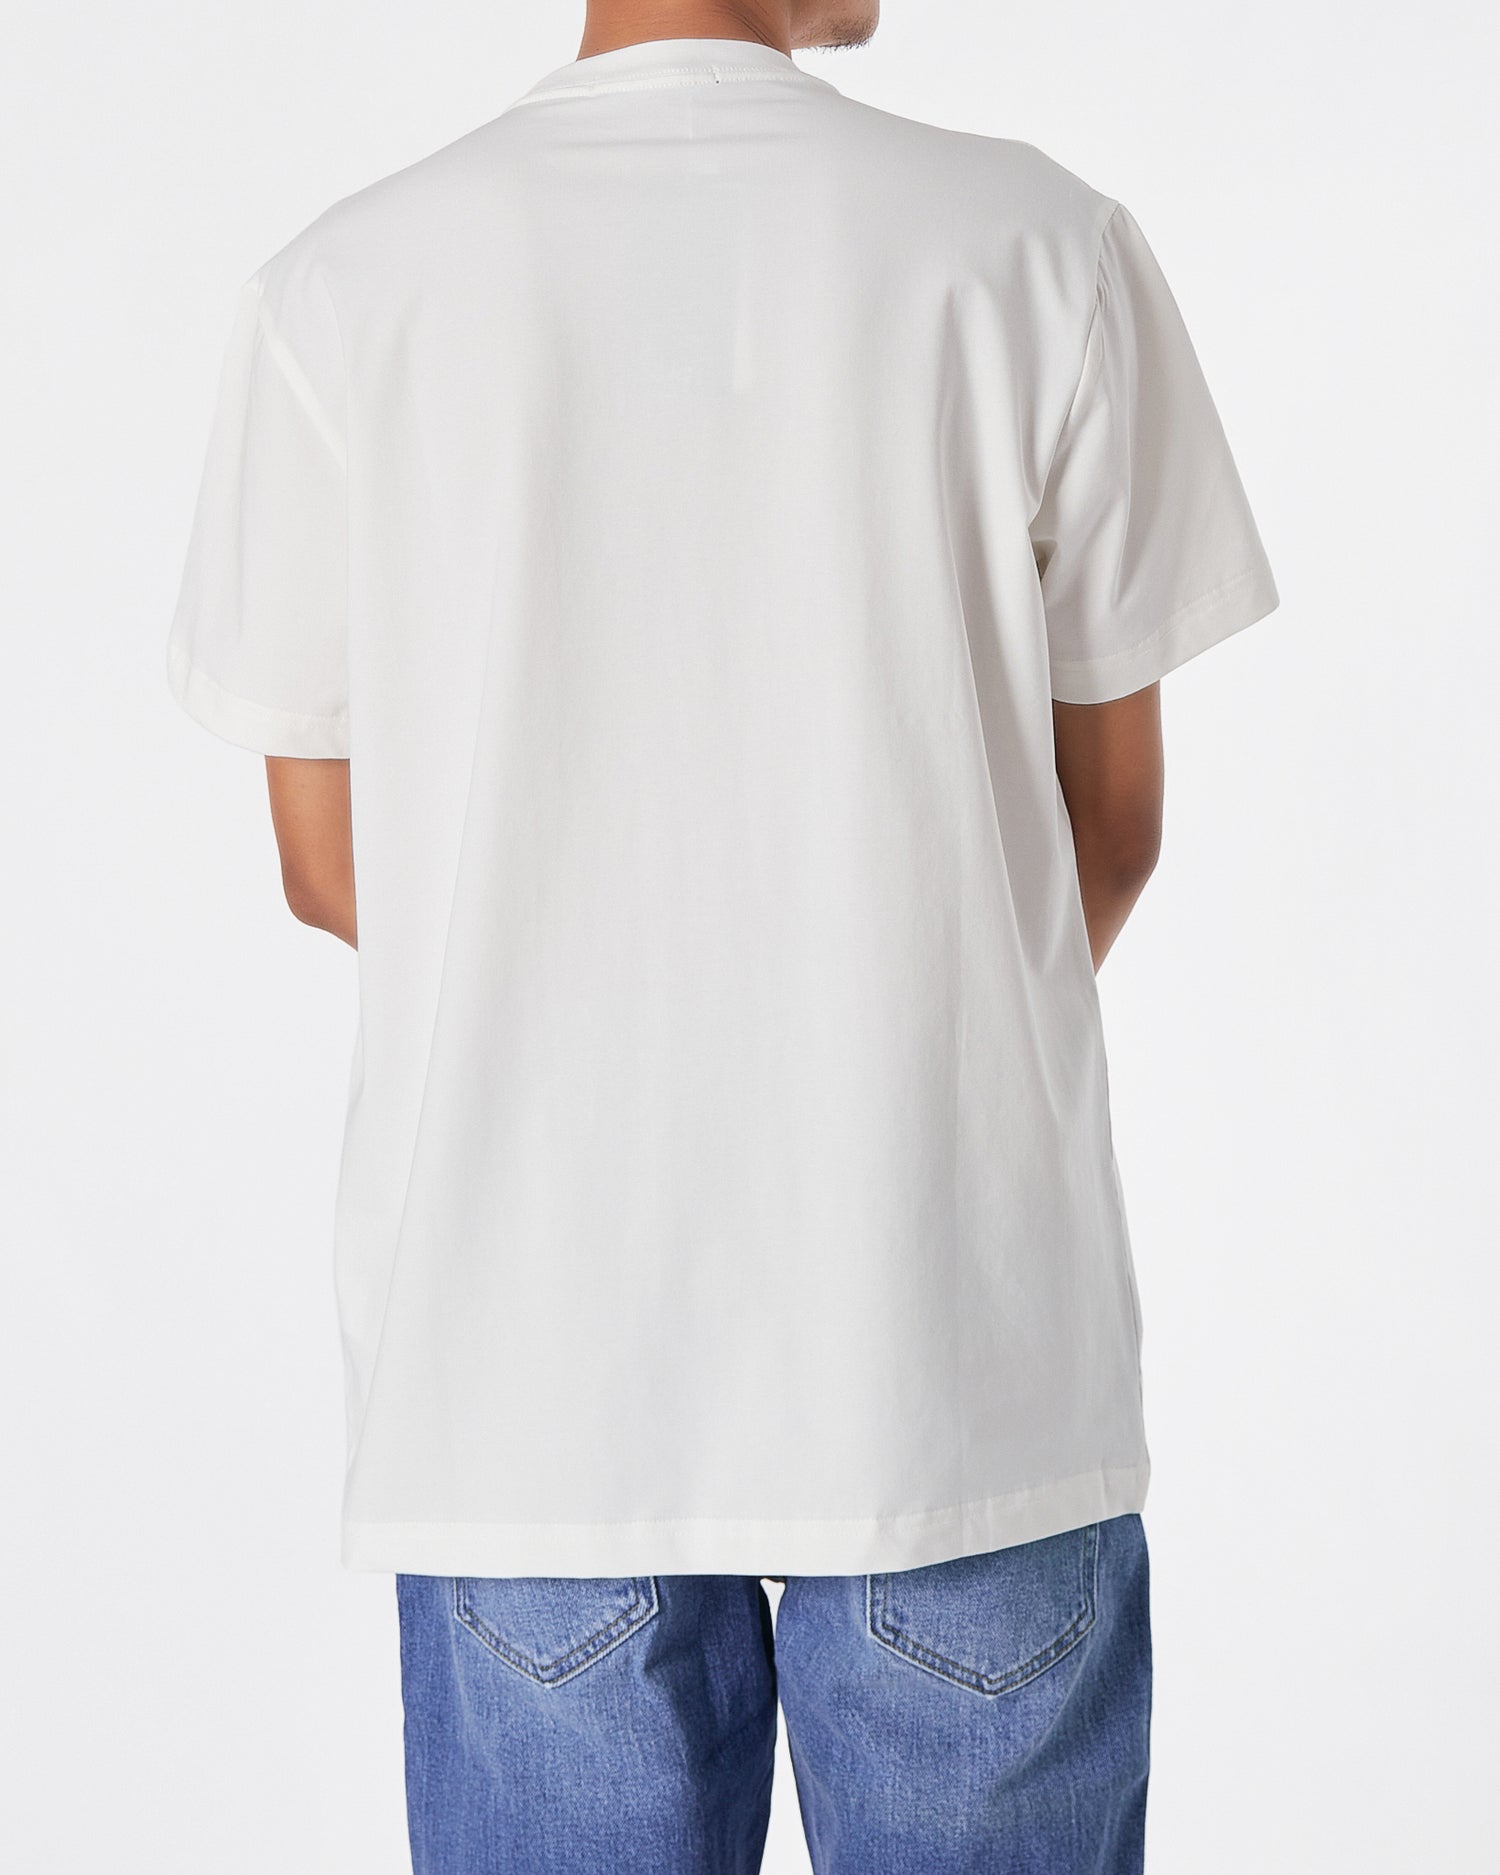 ARM Bird Printed Men White T-Shirt 17.90